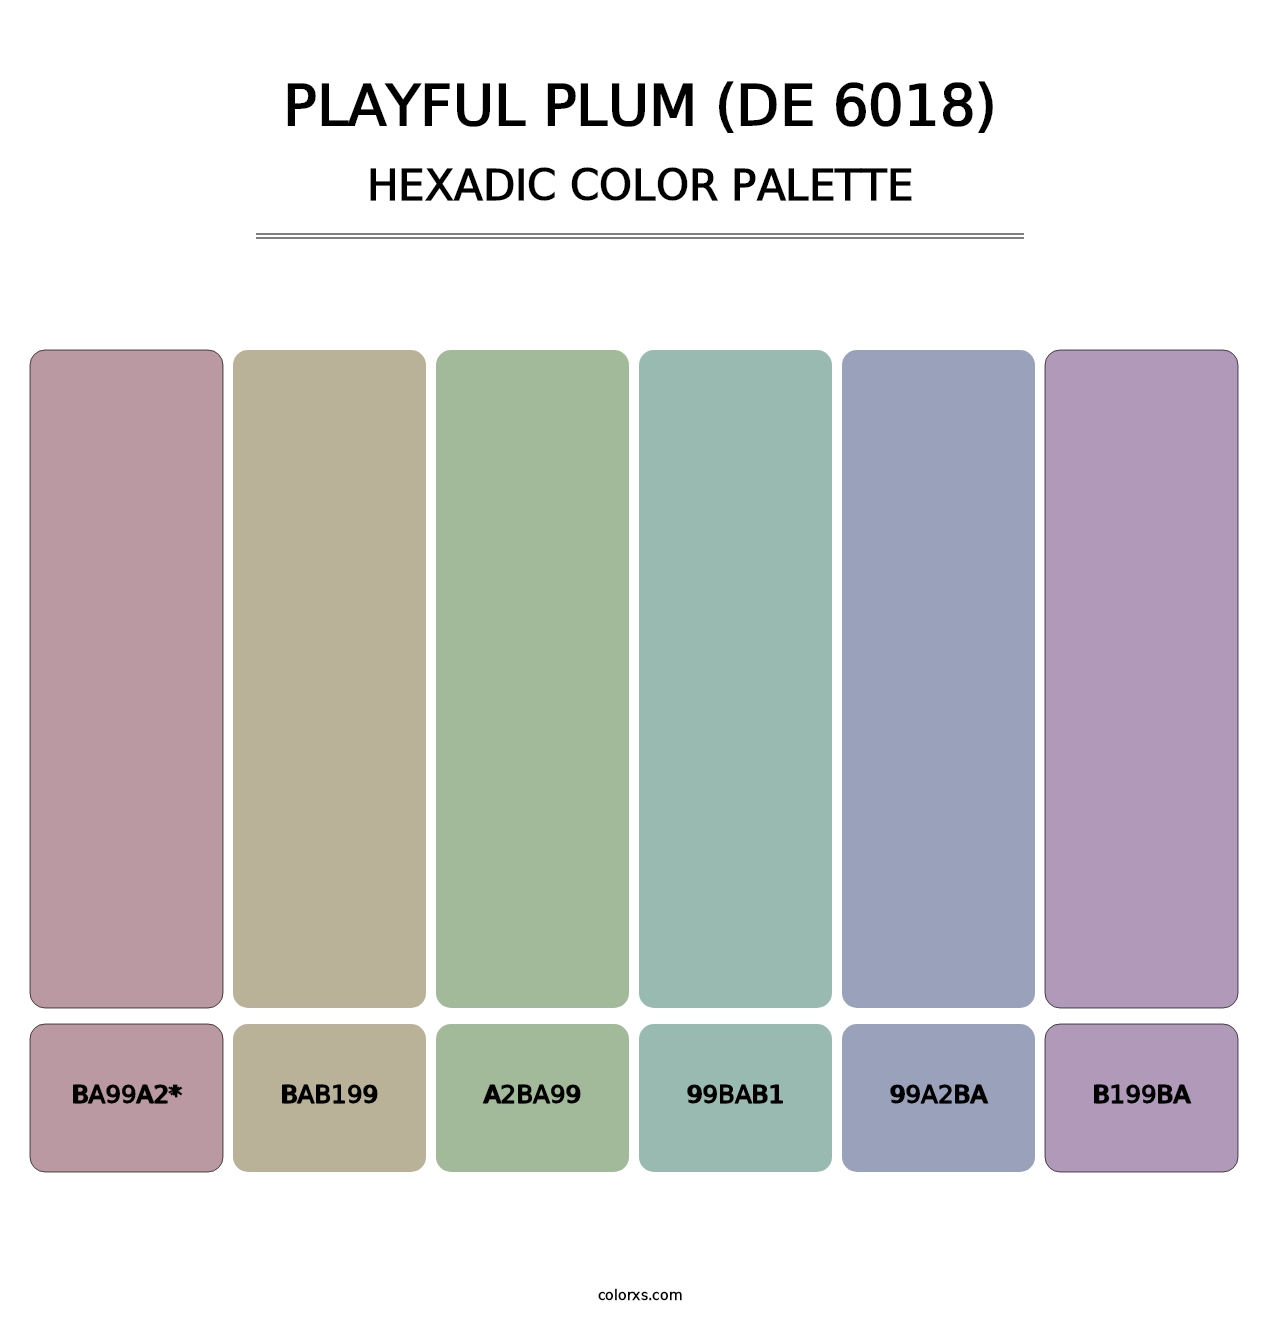 Playful Plum (DE 6018) - Hexadic Color Palette